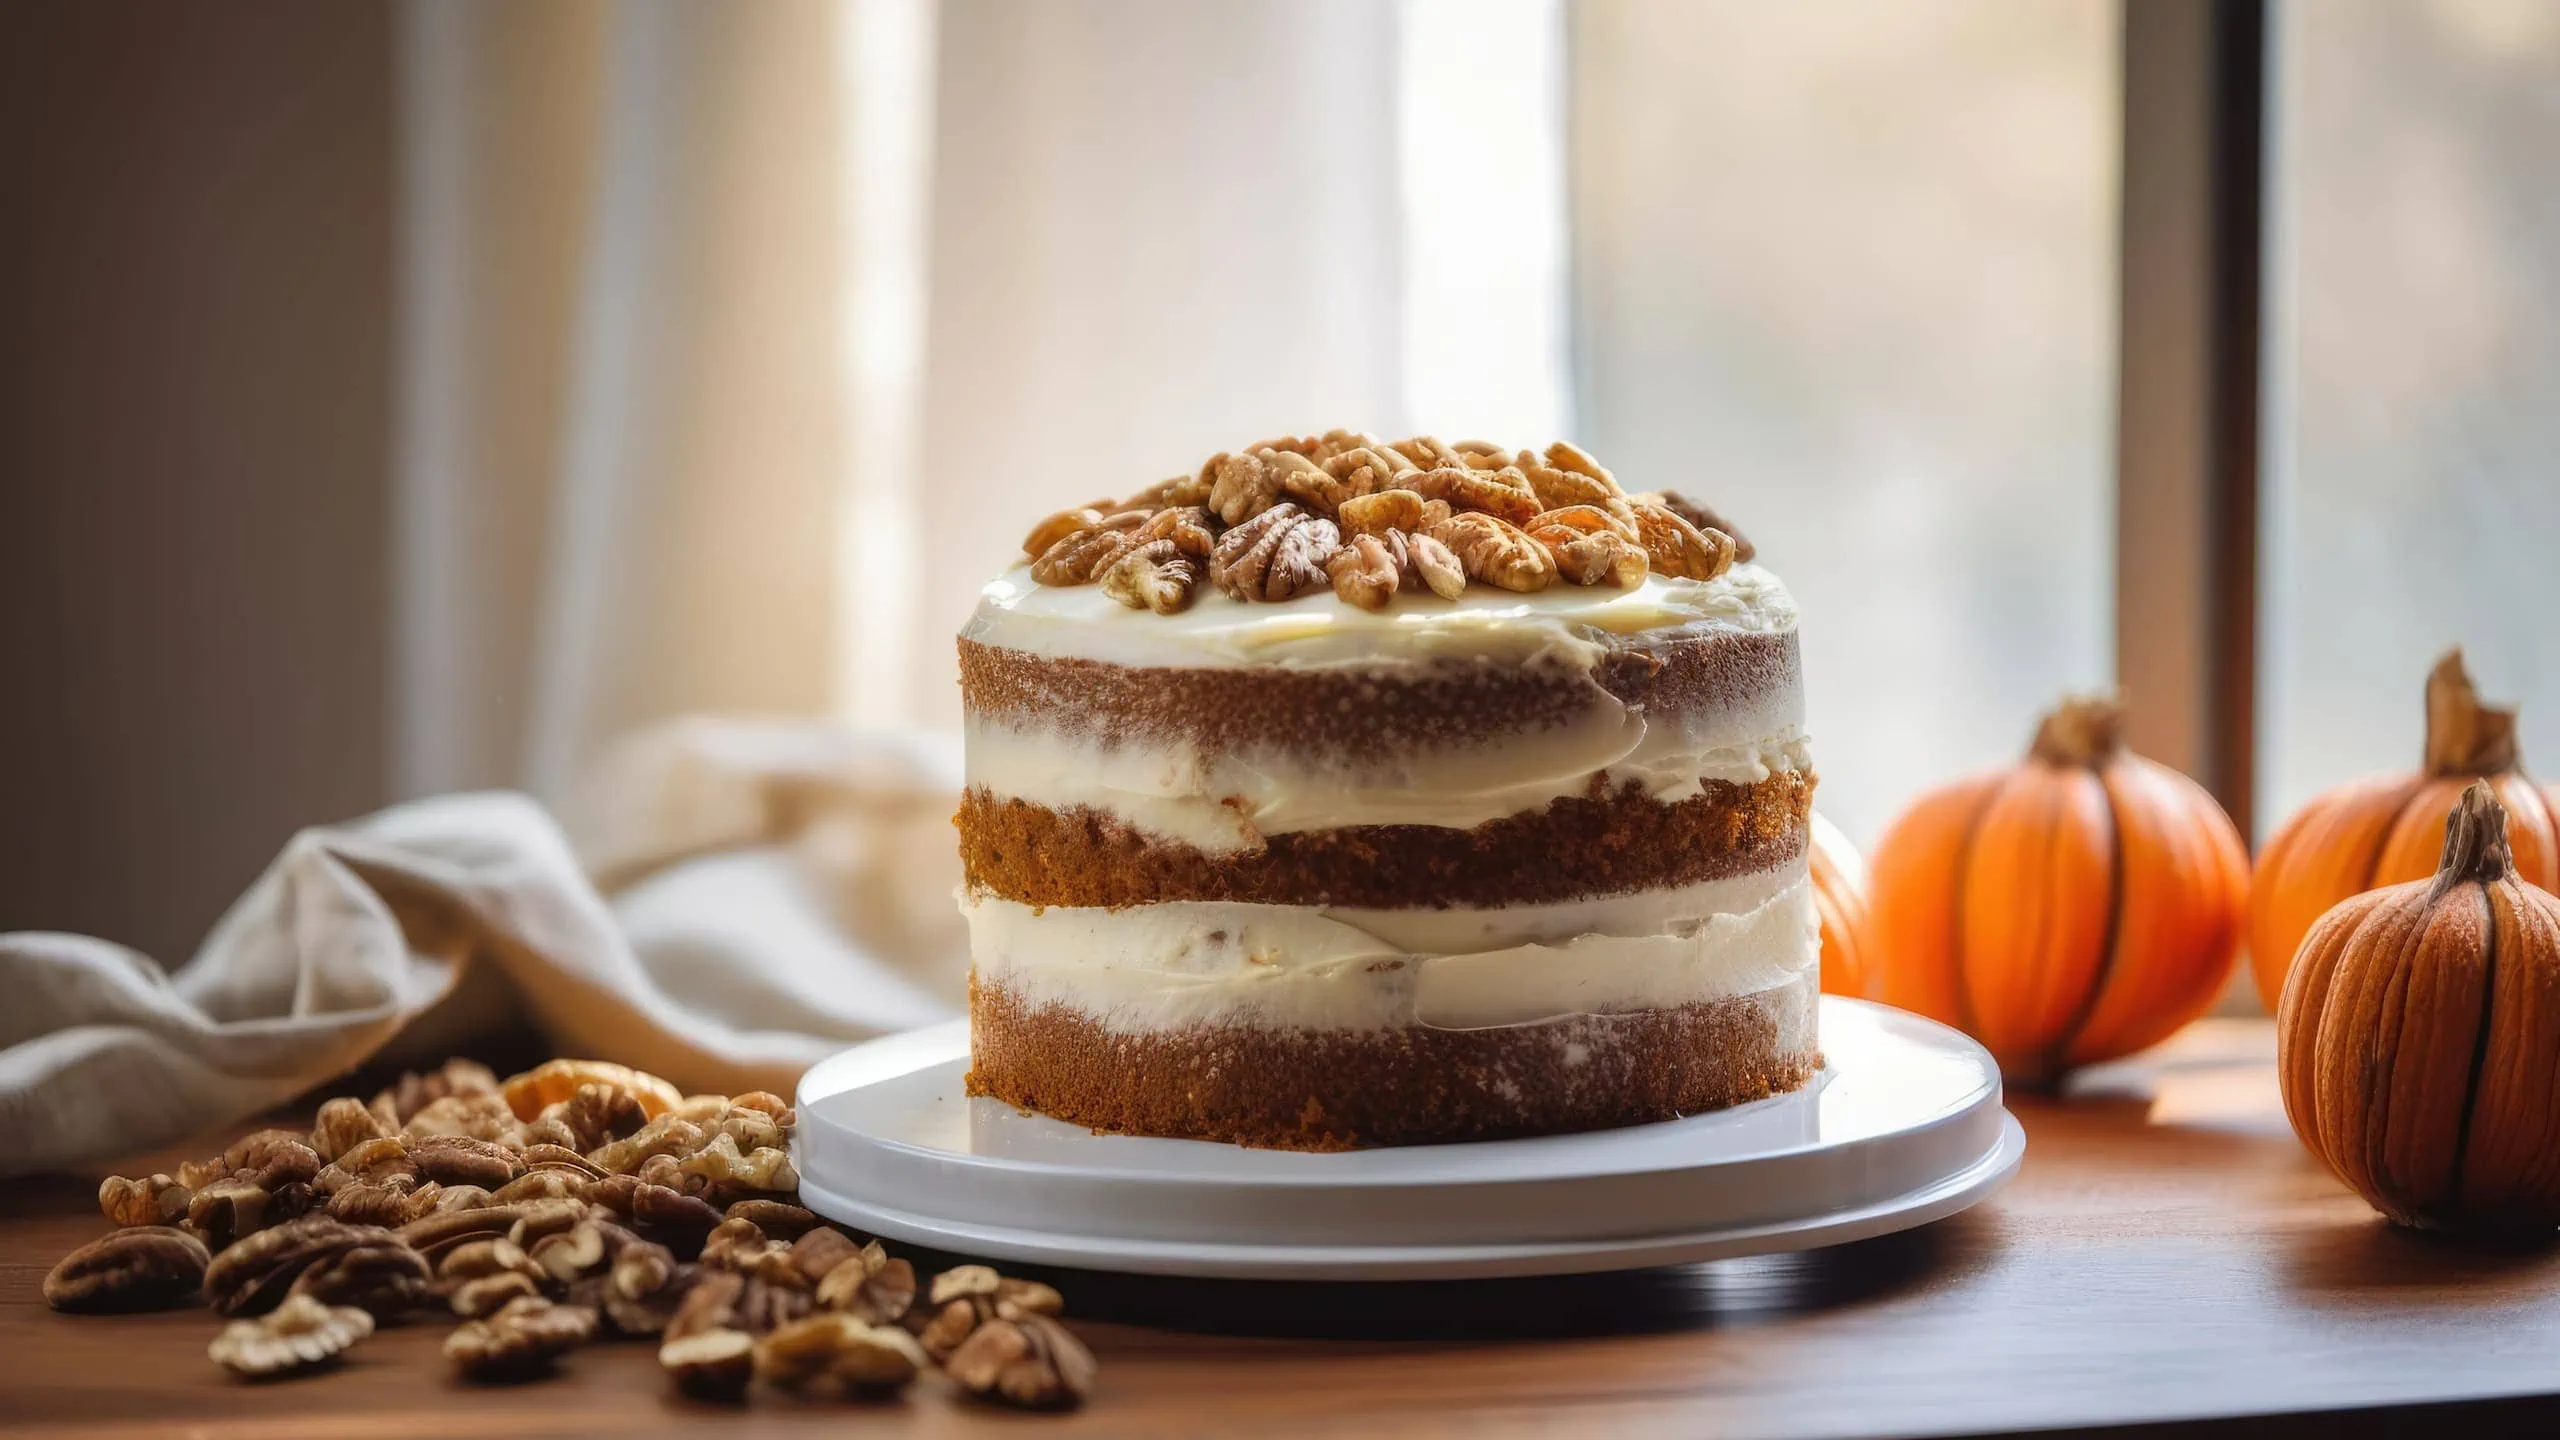 Our version of Milk Bar's pumpkin pie recipe